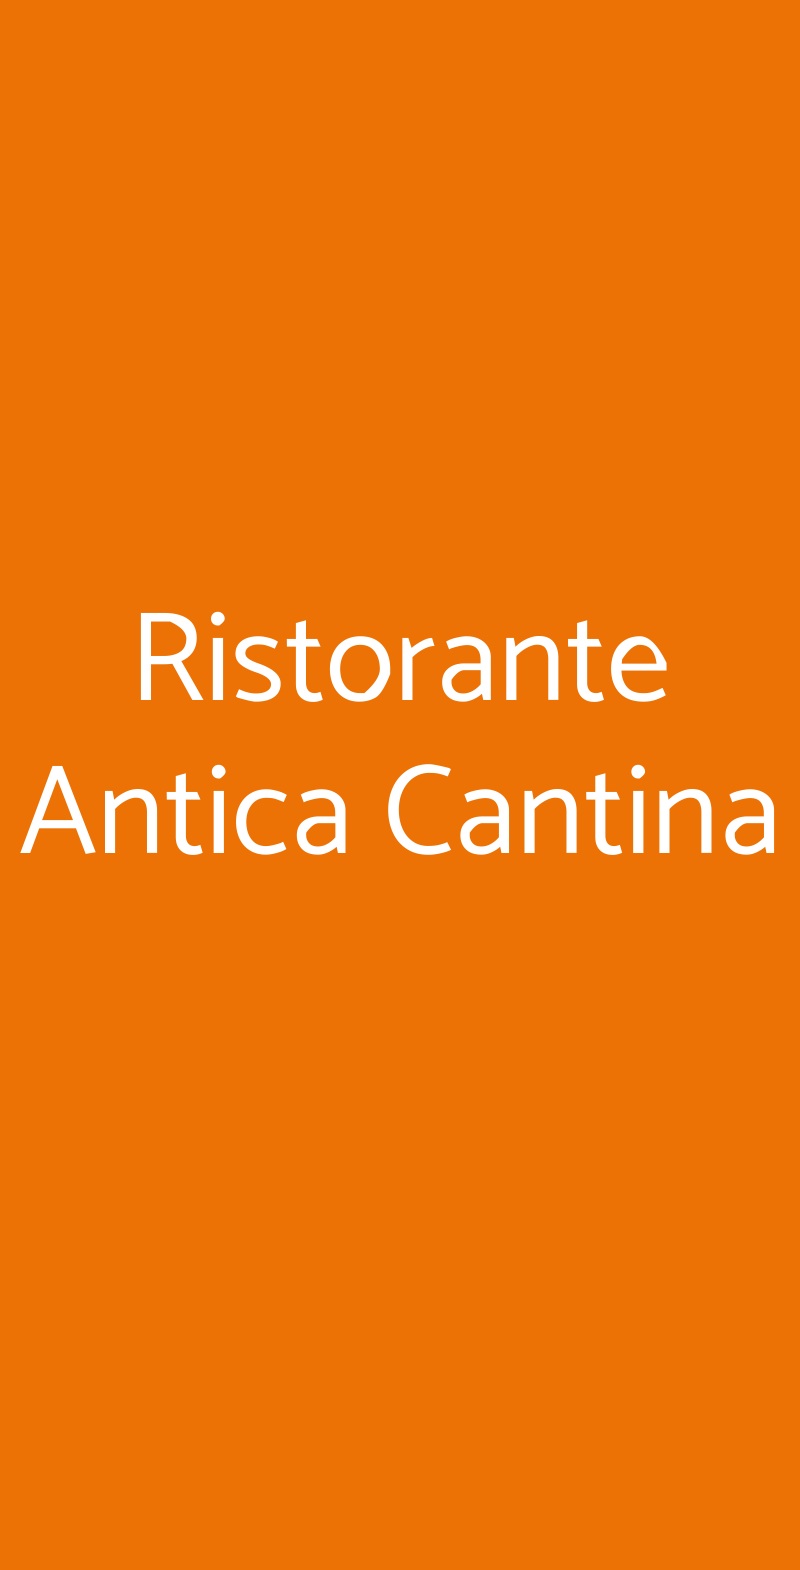 Ristorante Antica Cantina Valmontone menù 1 pagina